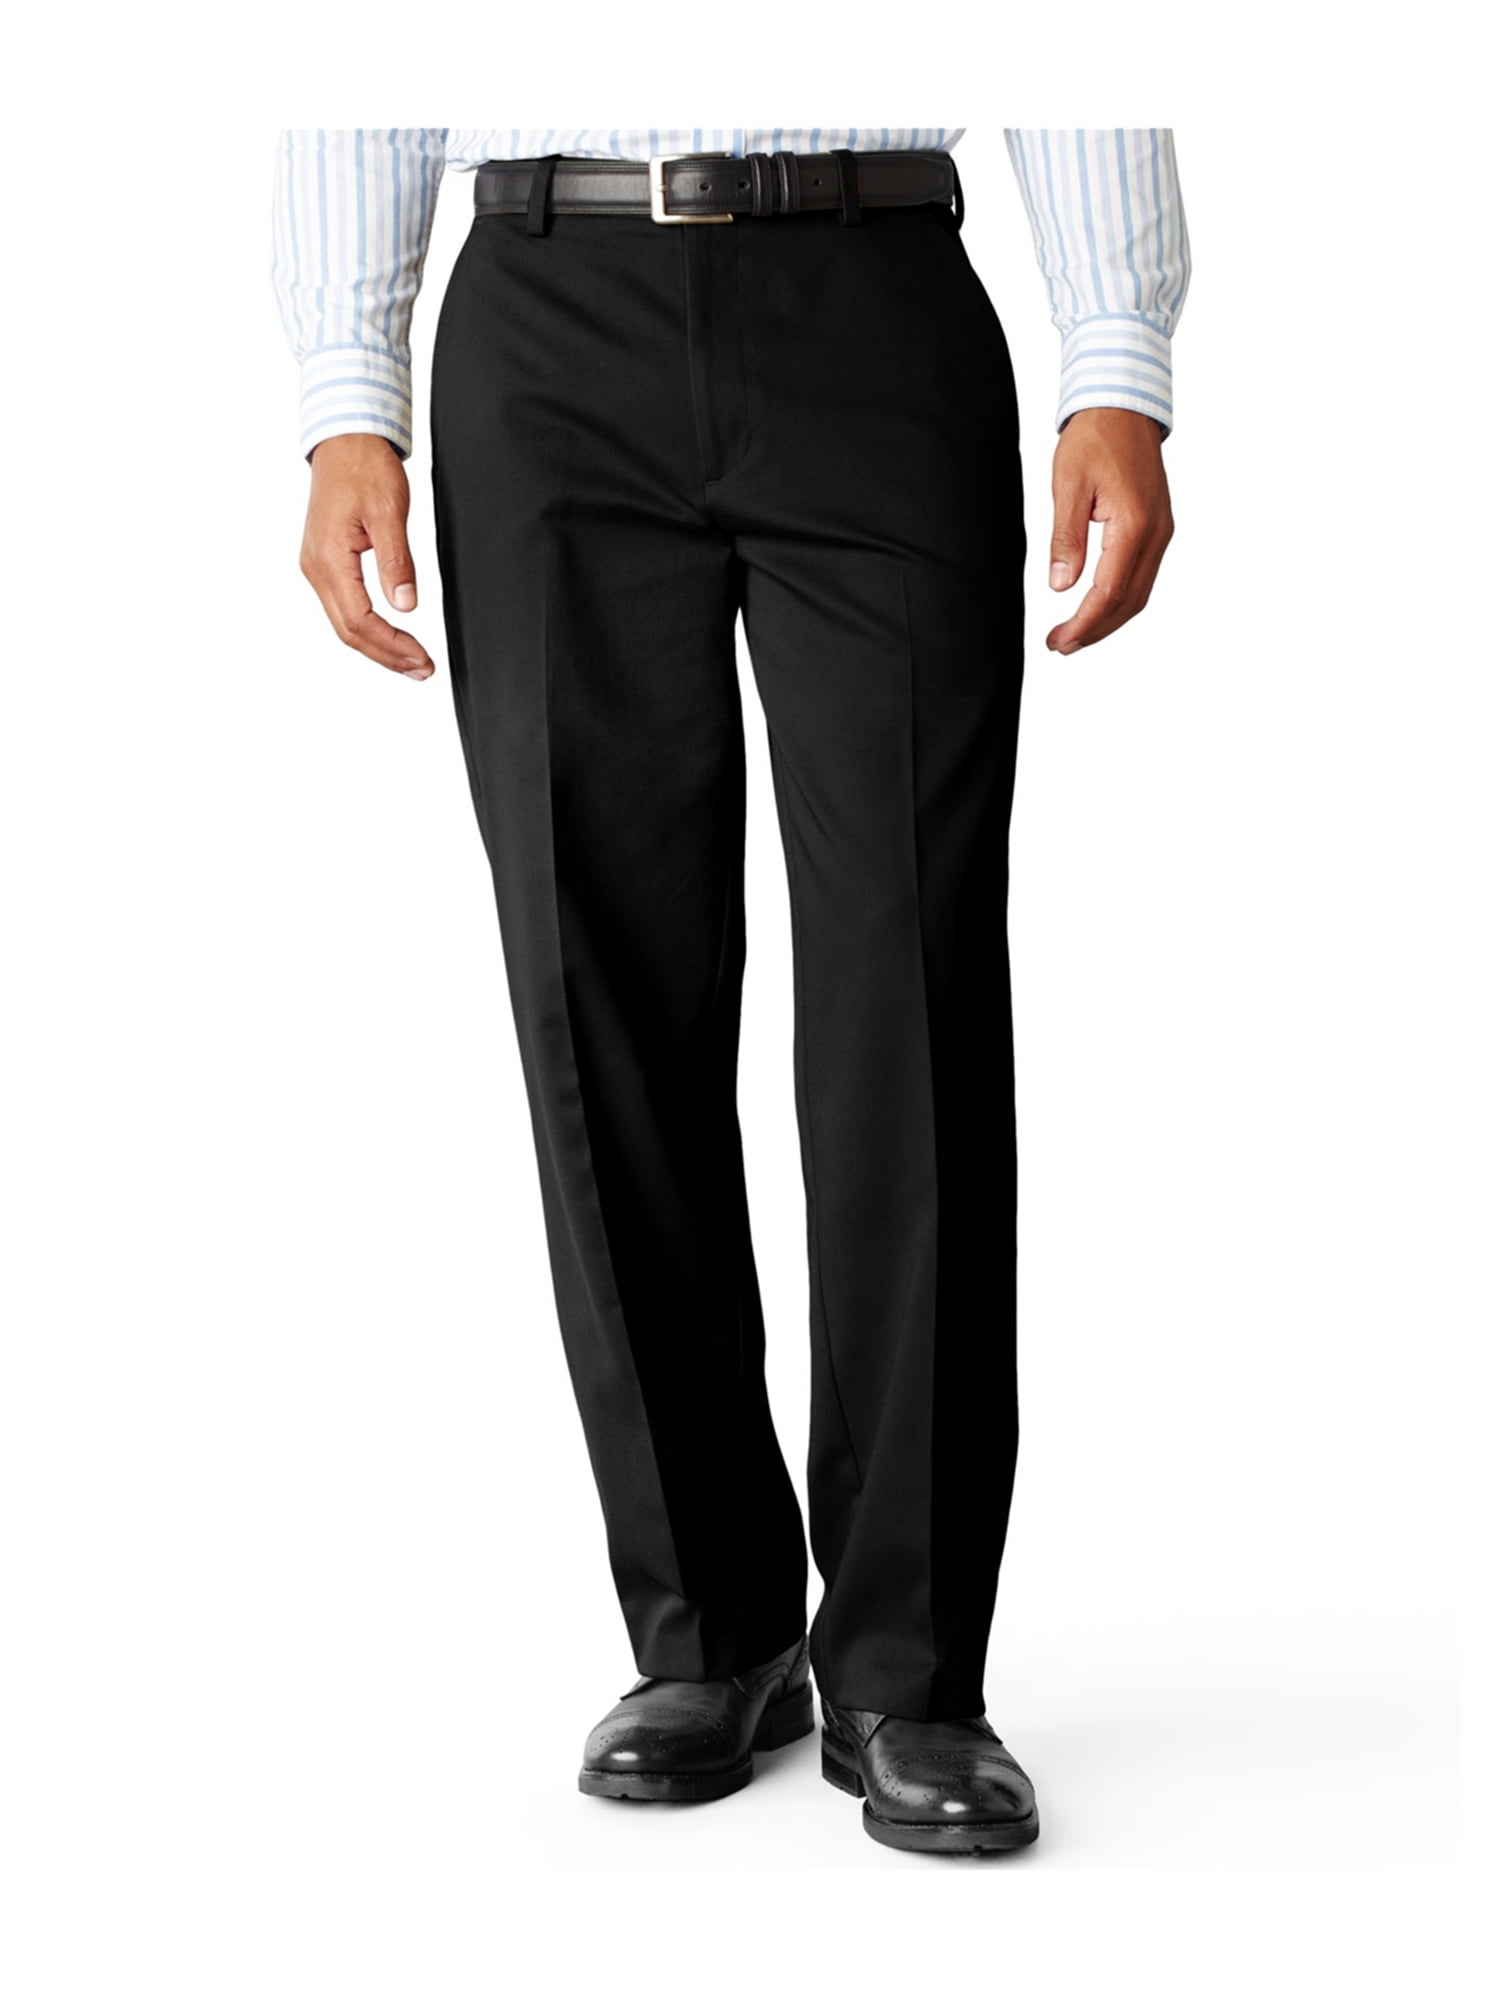 Dockers Mens Easy Khaki Casual Chino Pants black 56x32 | Walmart Canada